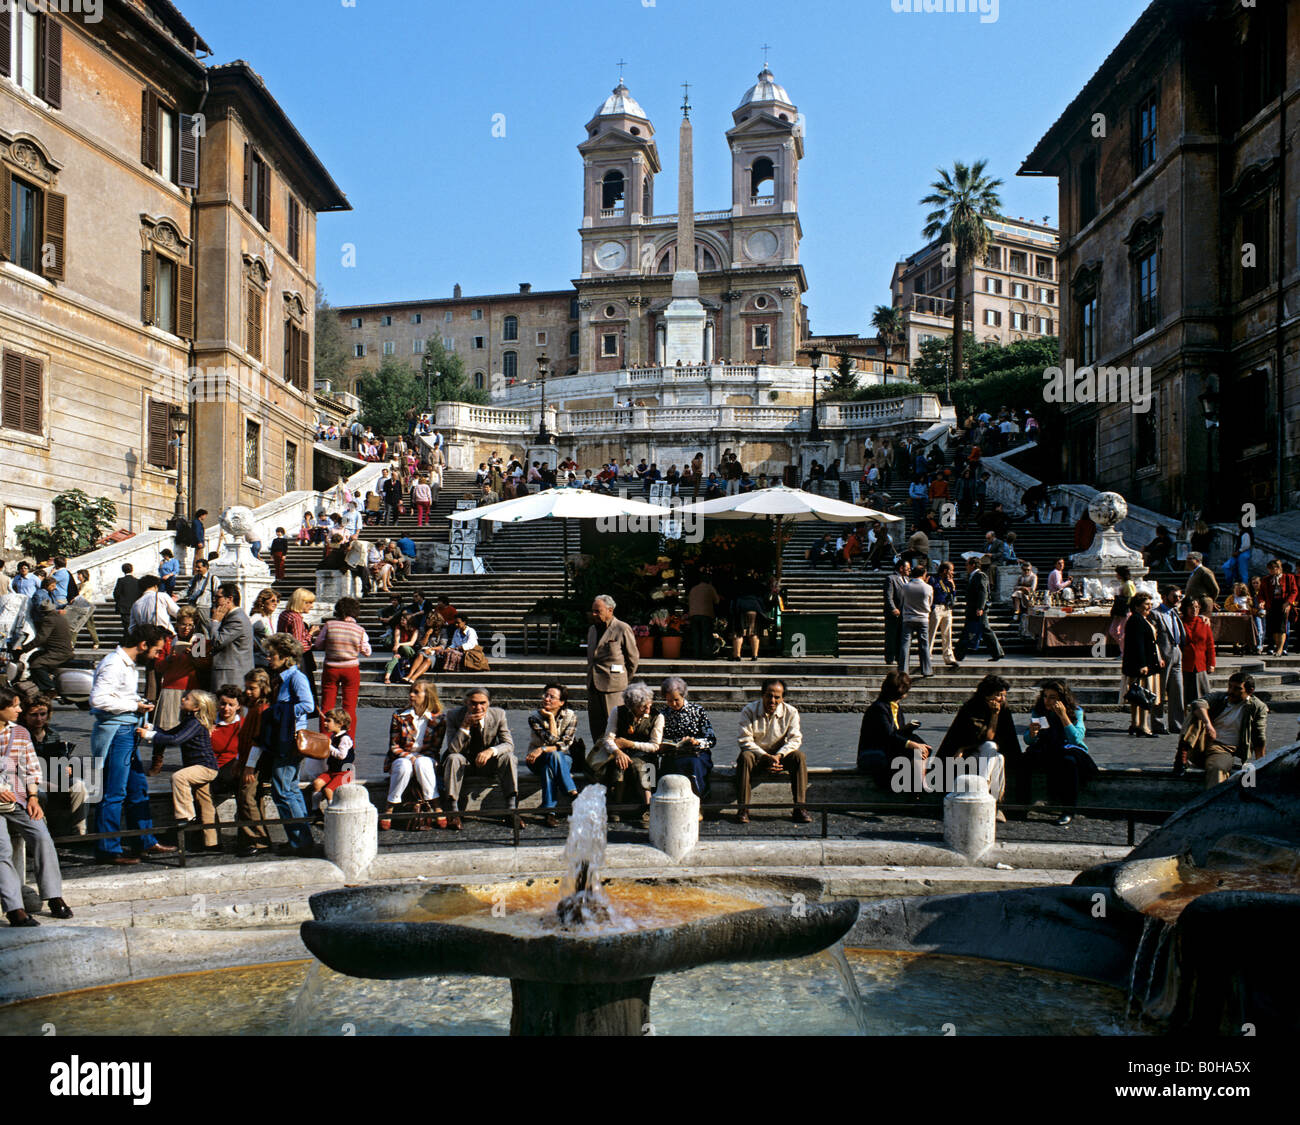 Spanische Treppe, Piazza di Spagna, Fontana della Barcaccia Brunnen, Kirche Santa Trinita, Rom, Italien Stockfoto